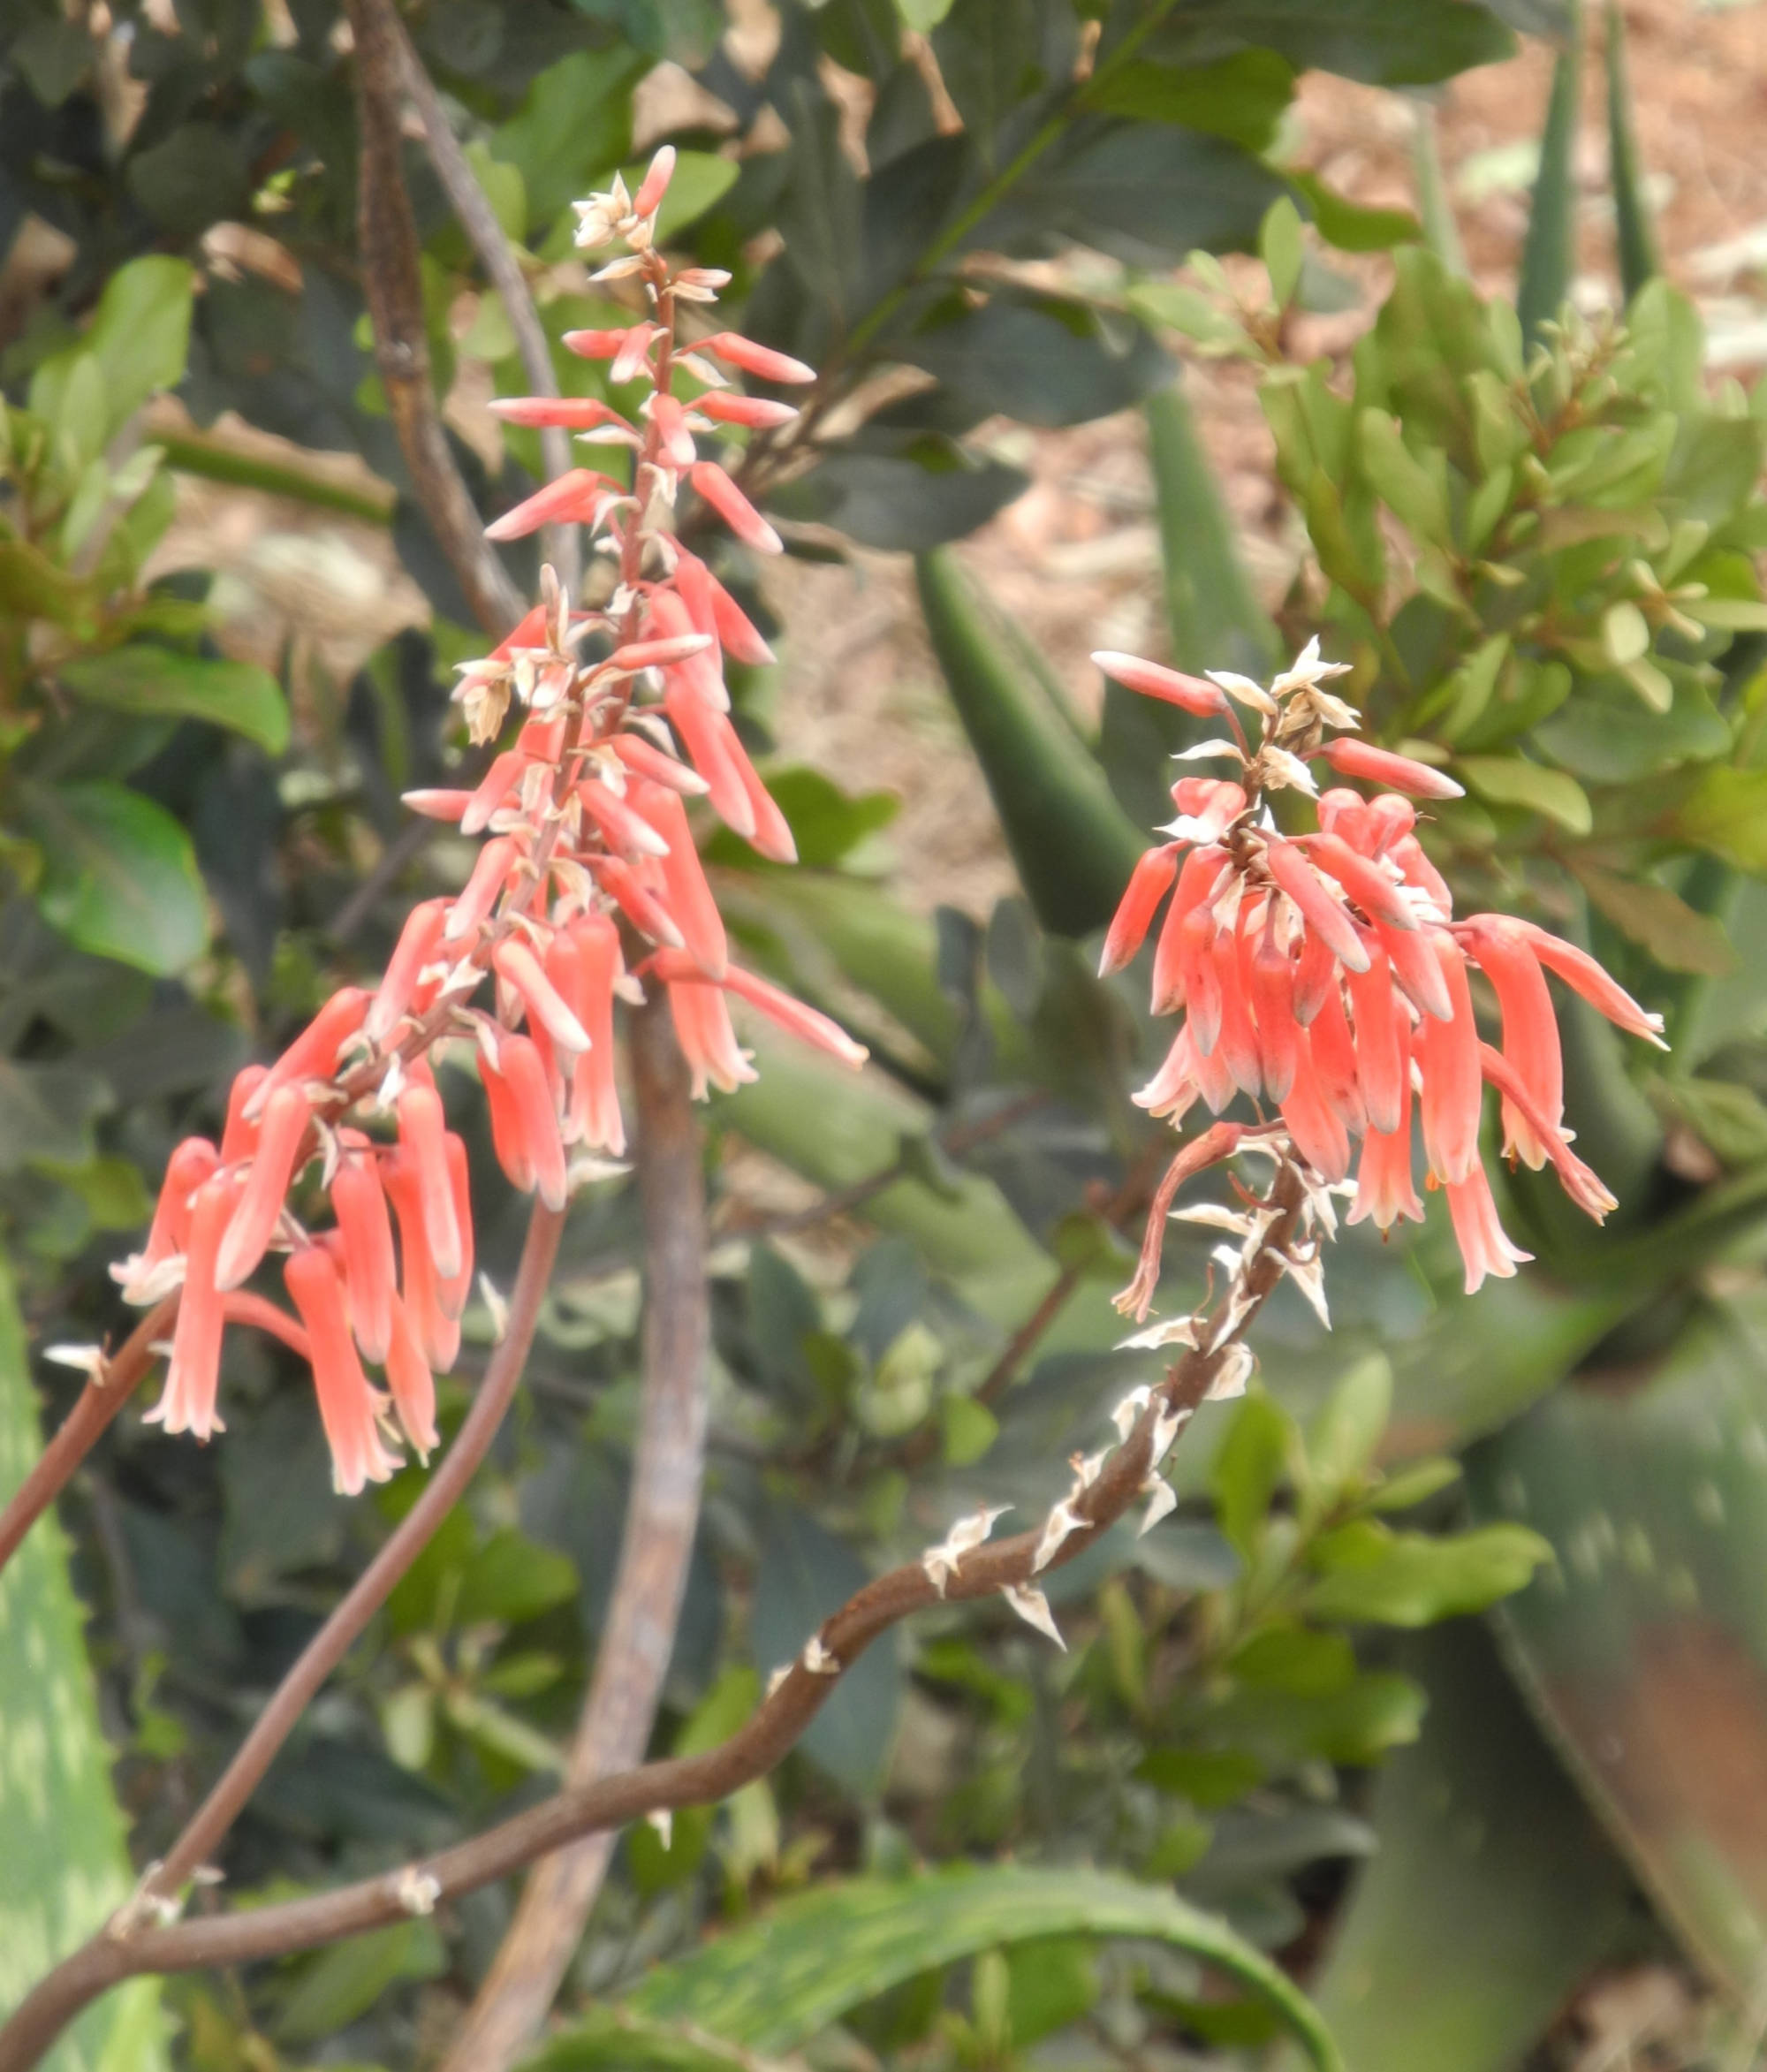 Flowers of Aloe deserti